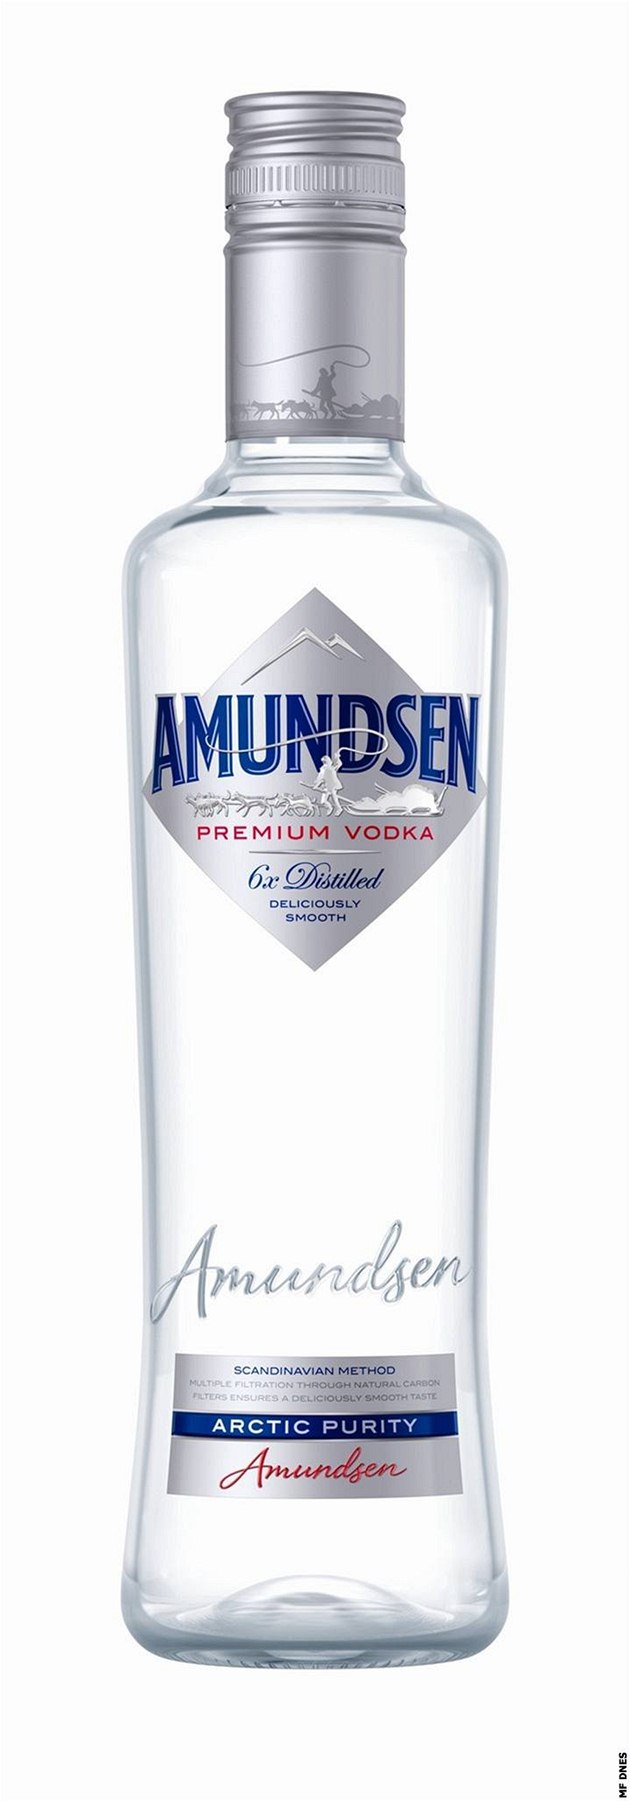 Amundsen vodka